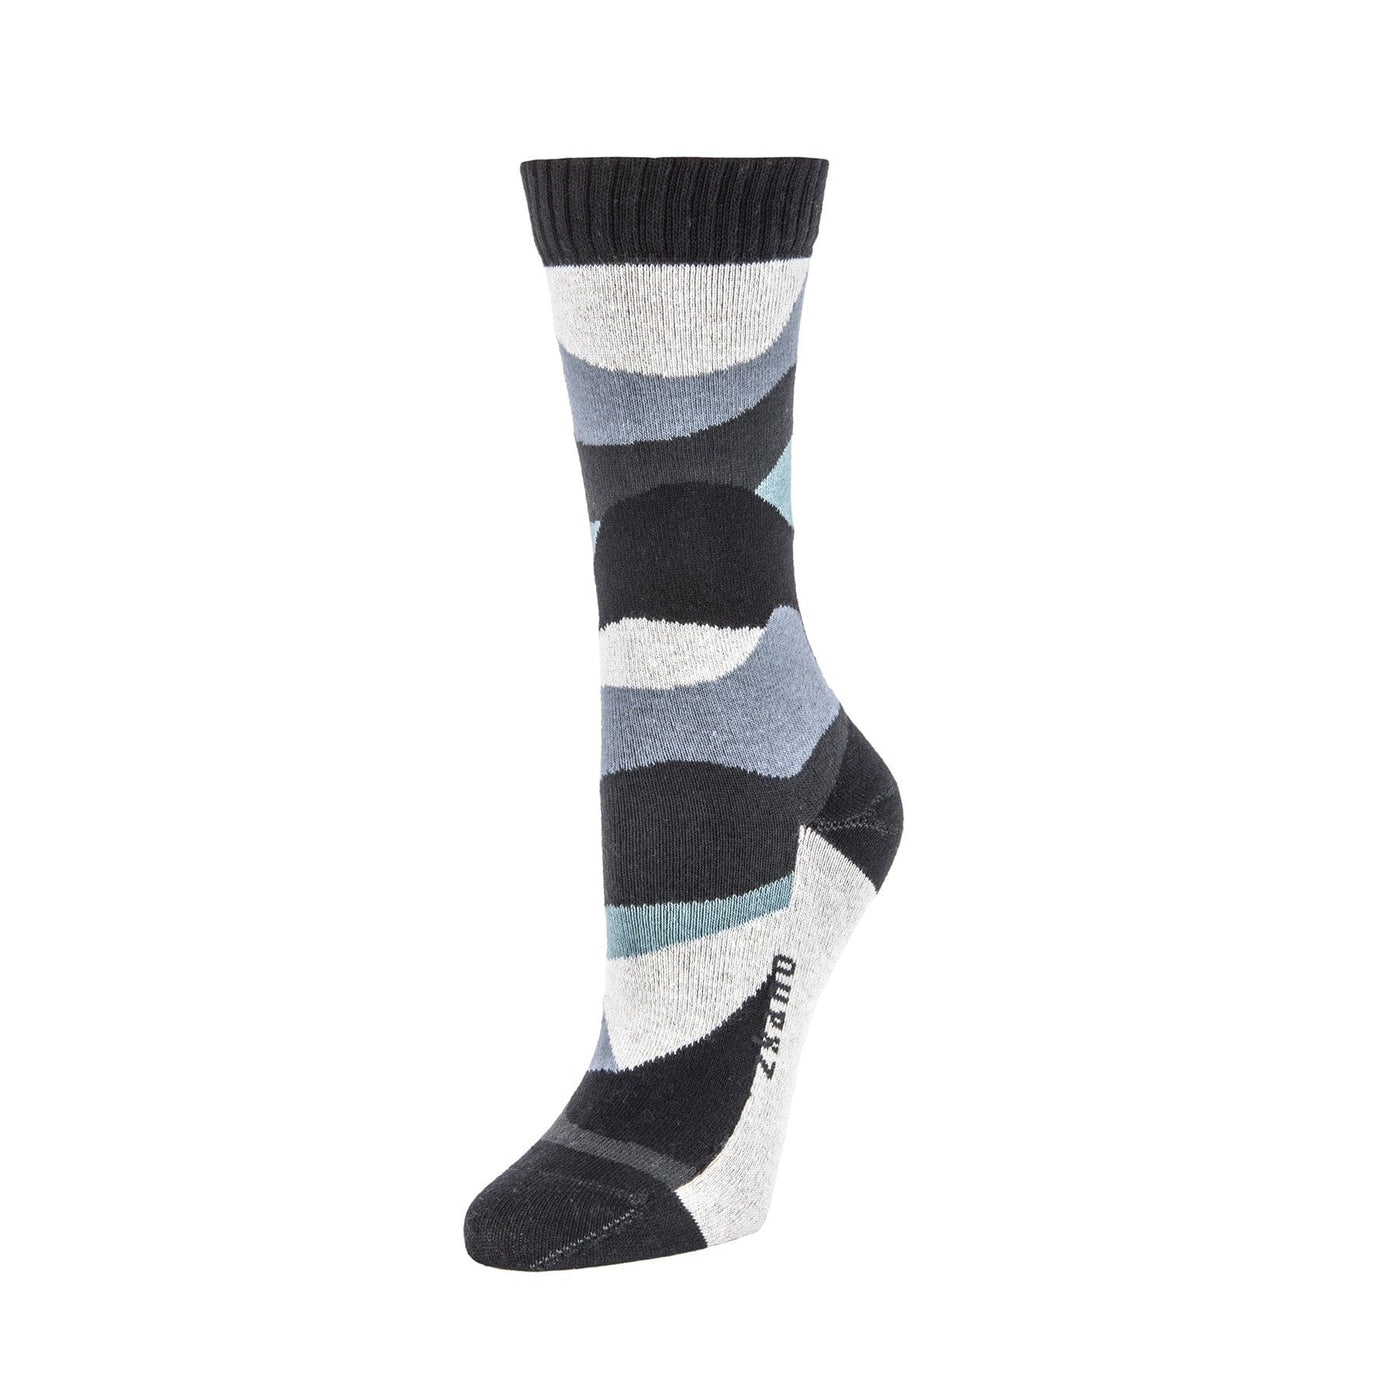 Zkano Crew Medium Dunes - Organic Cotton Crew Socks - Black organic-socks-made-in-usa